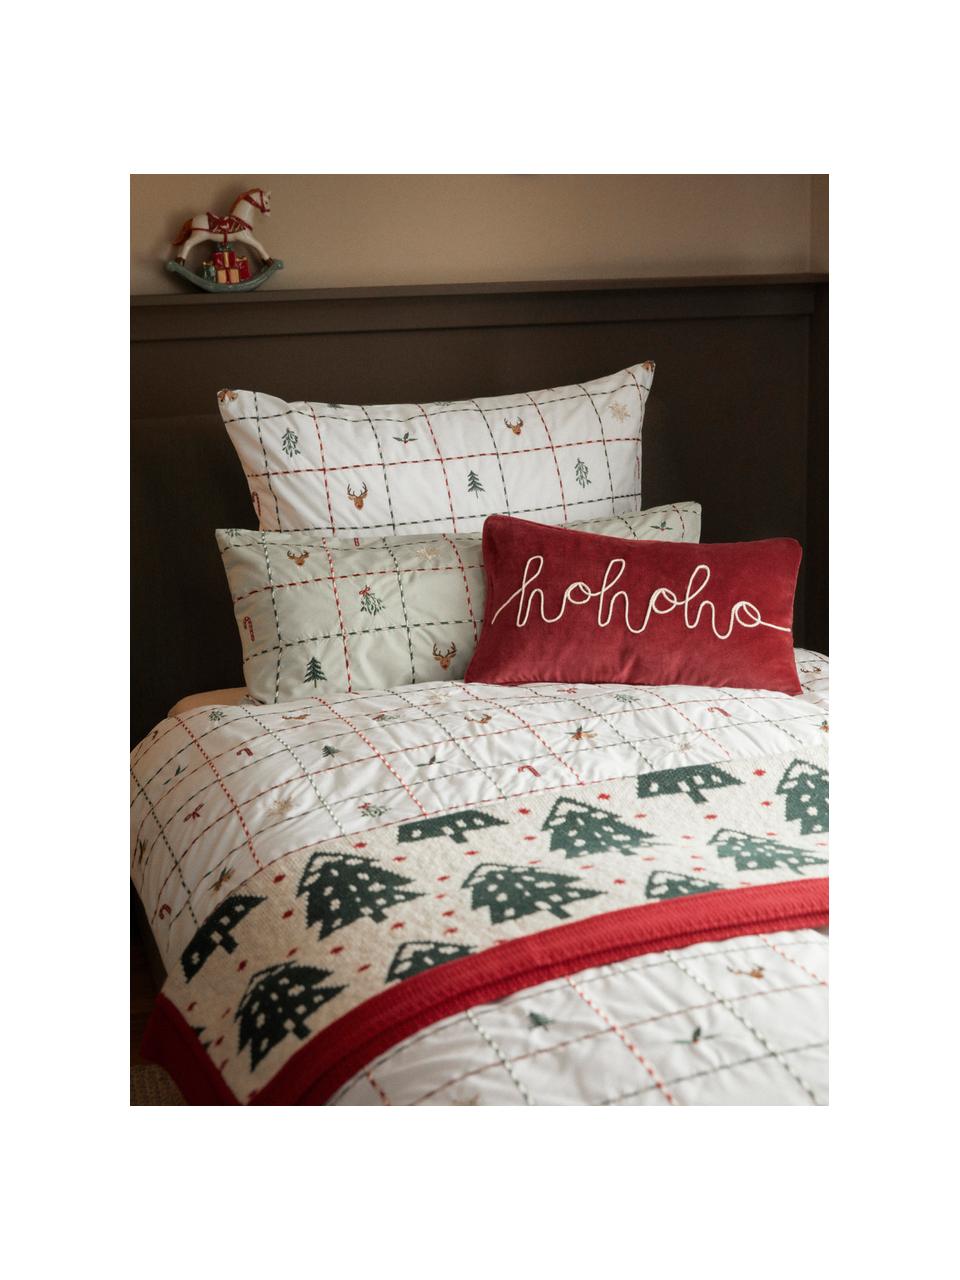 Baumwolldecke Noeleen mit weihnachtlichem Motiv, 100 % Baumwolle, Rot, Off White, Dunkelgrün, B 130 x L 170 cm